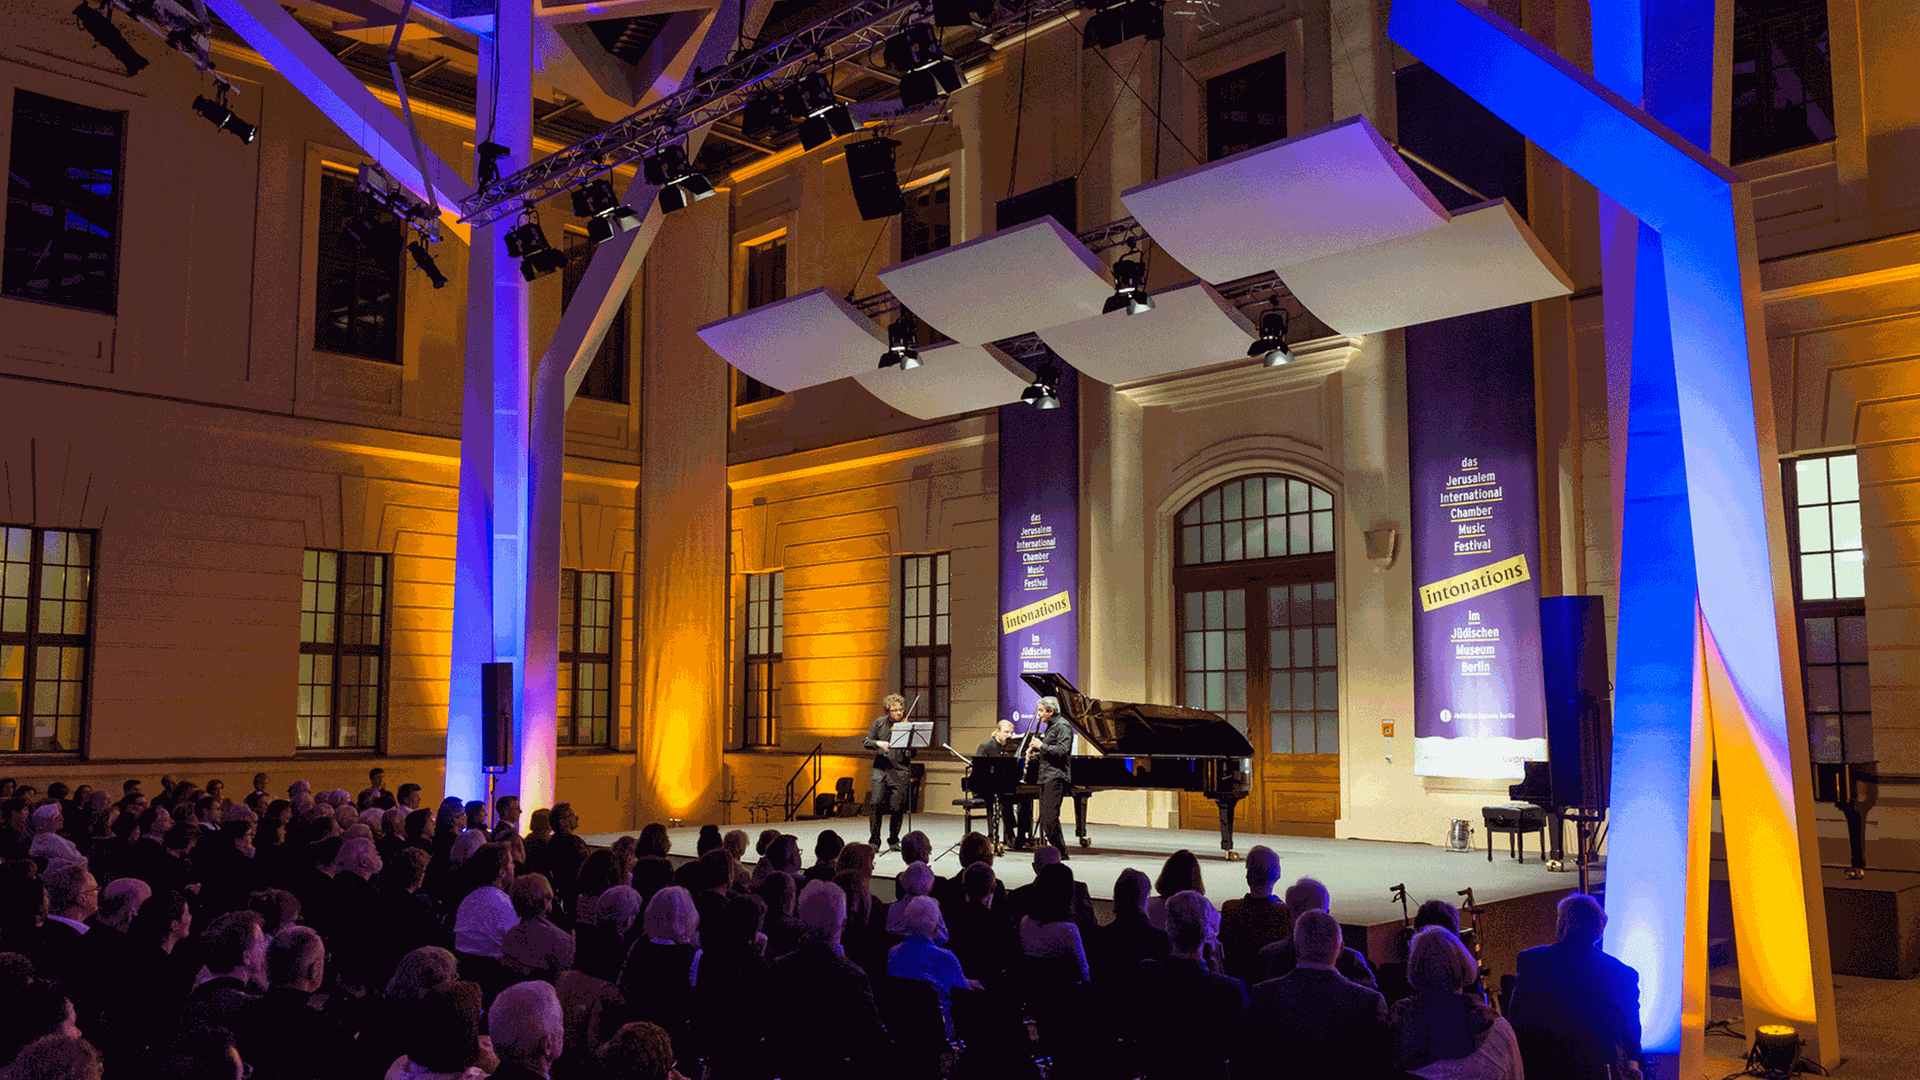 Die Bühne im Glashof des Jüdischen Museums Berlin beim Festival Intonations 2018